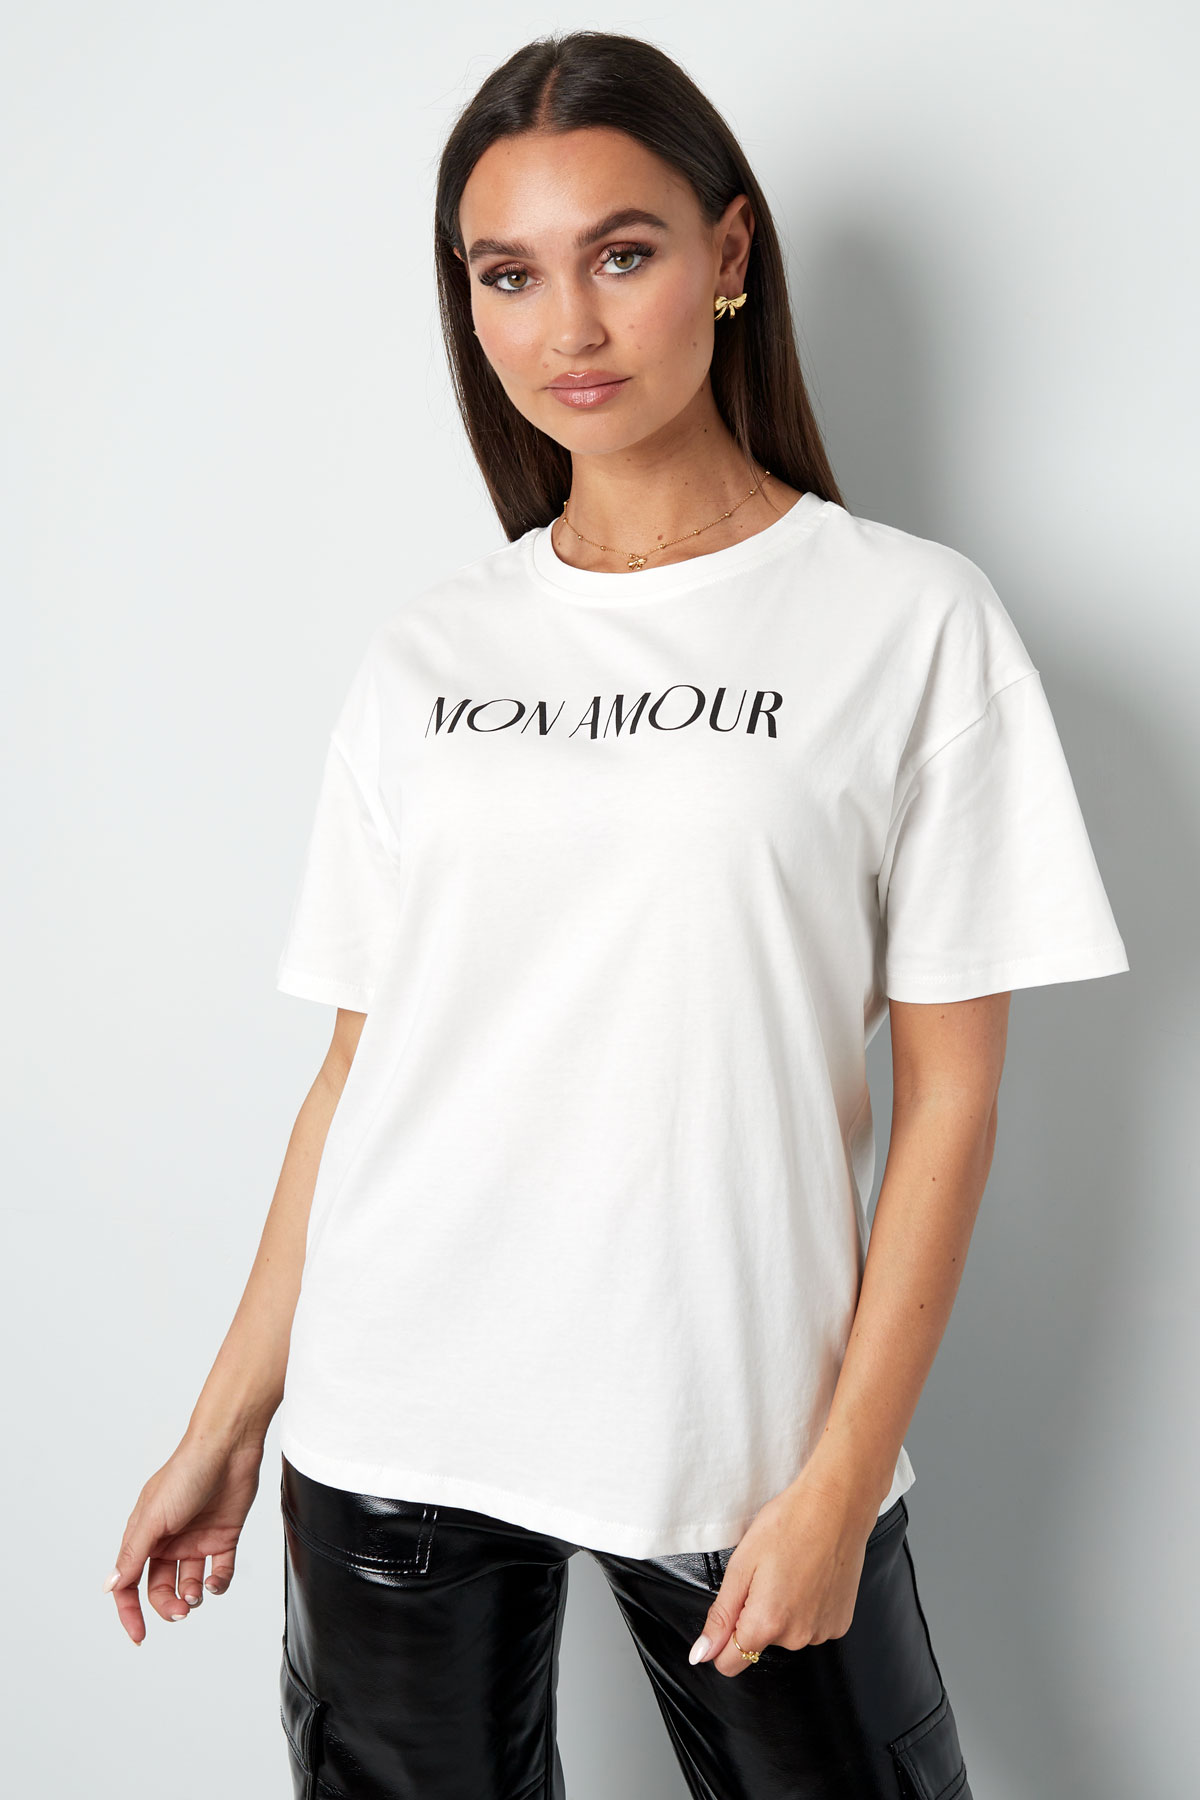 Mon amour tişört - beyaz